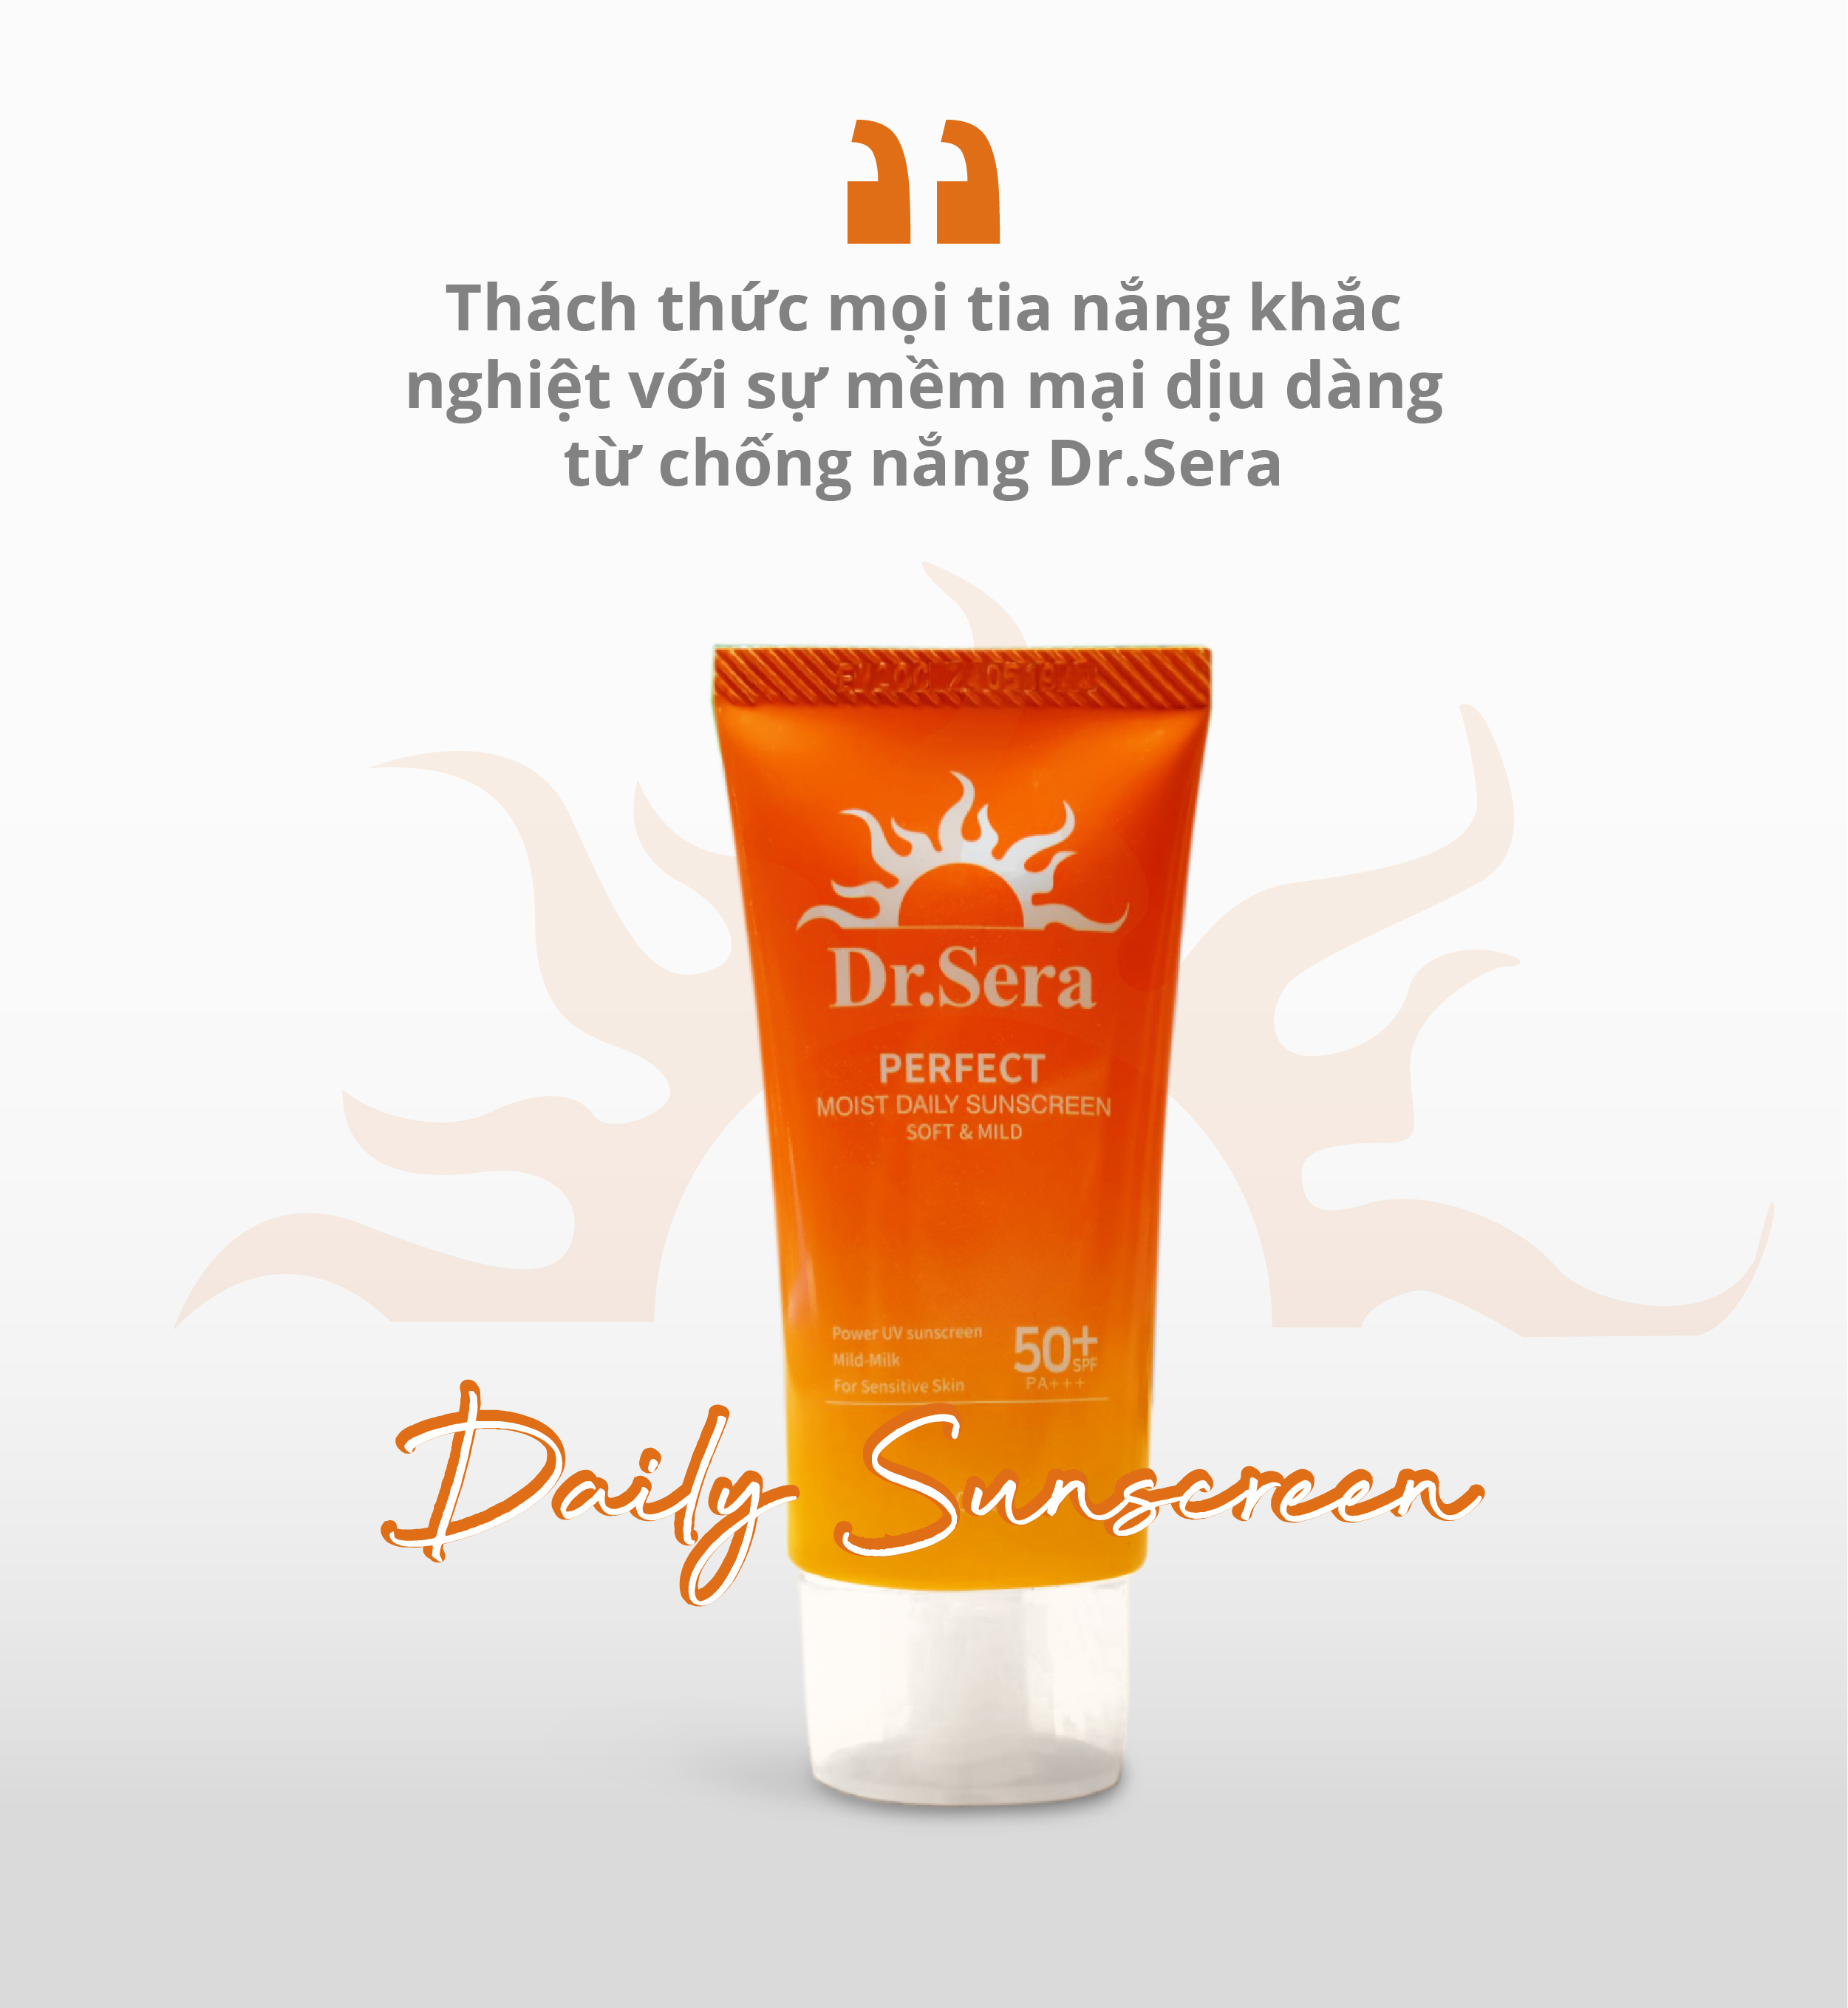 Kem chống nắng Dr.Sera Perfect Moist Daisly Sunscreen SPF50+/PA+++ hoàn hảo dưỡng ẩm, nâng tông da, mờ nếp nhăn